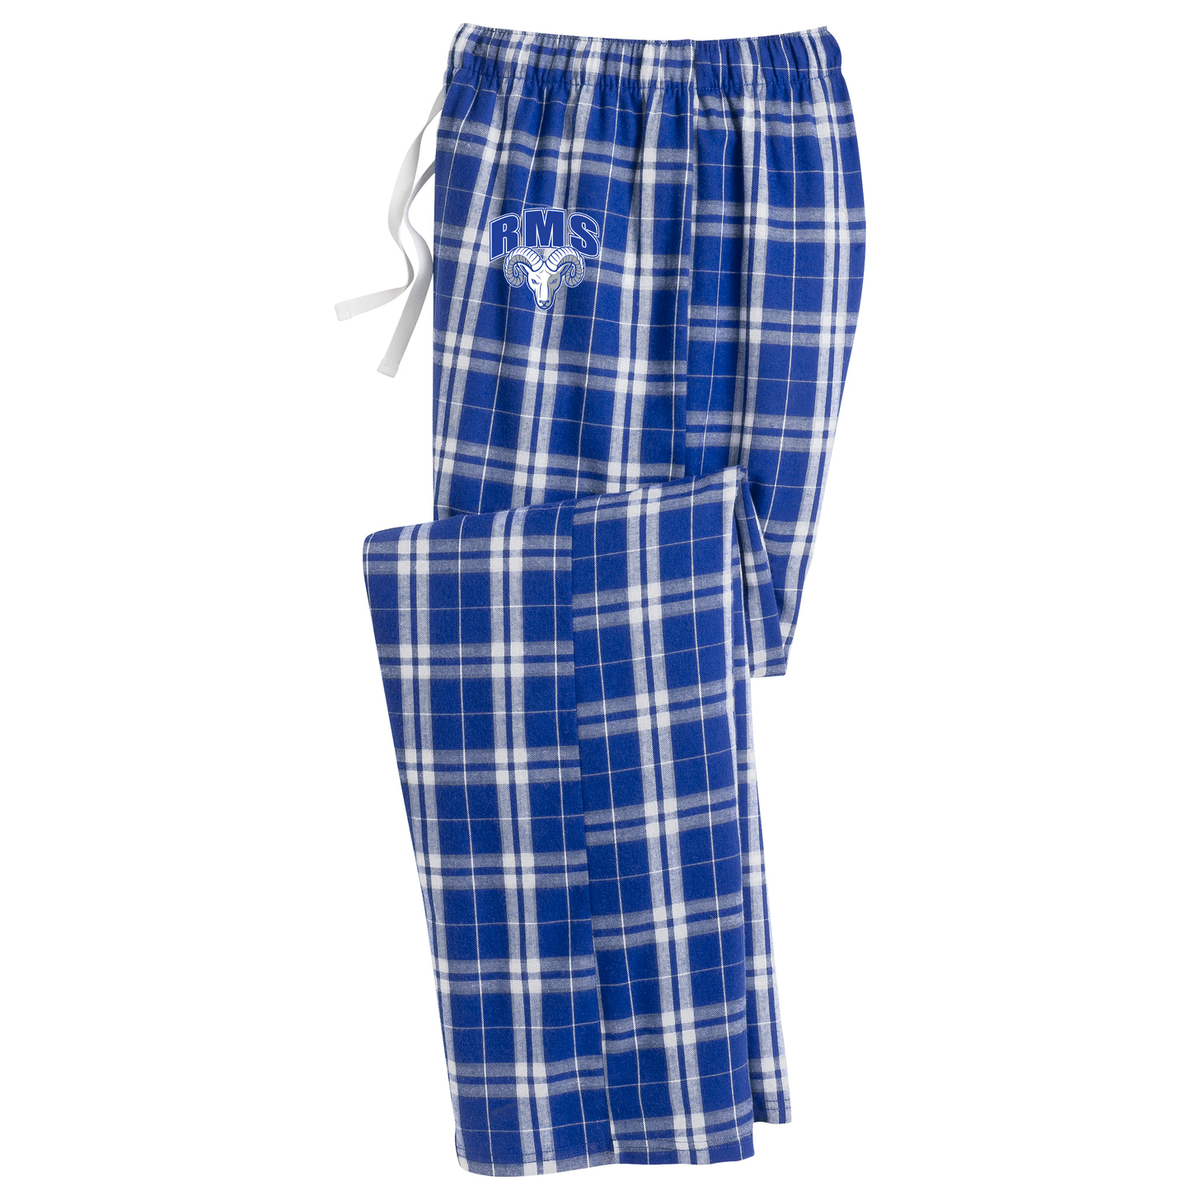 Rochambeau Middle School Plaid Pajama Pants